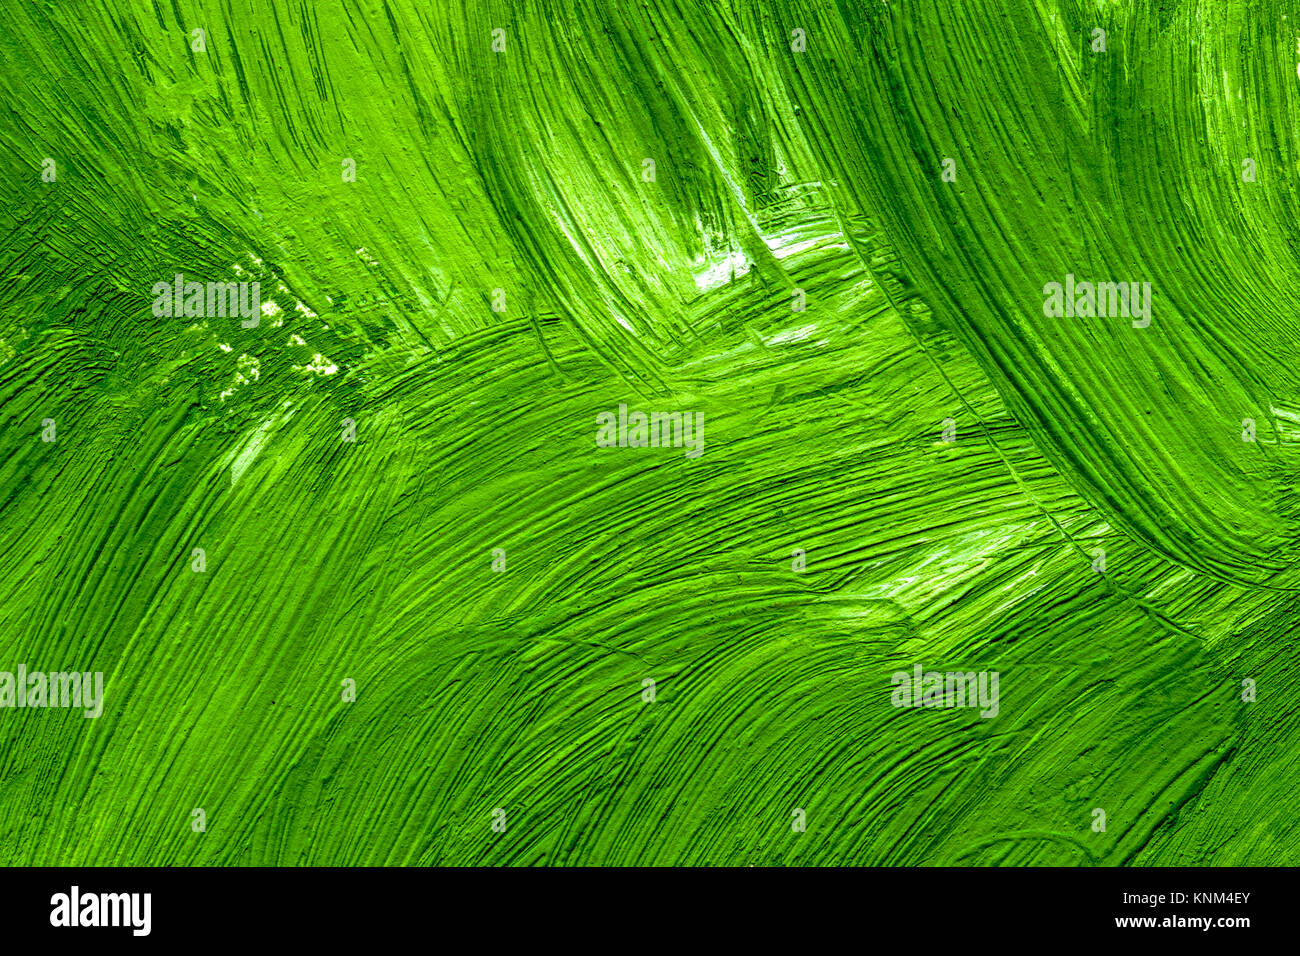 Coups de pinceau peinture texture détaillée de la gouache verte Banque D'Images